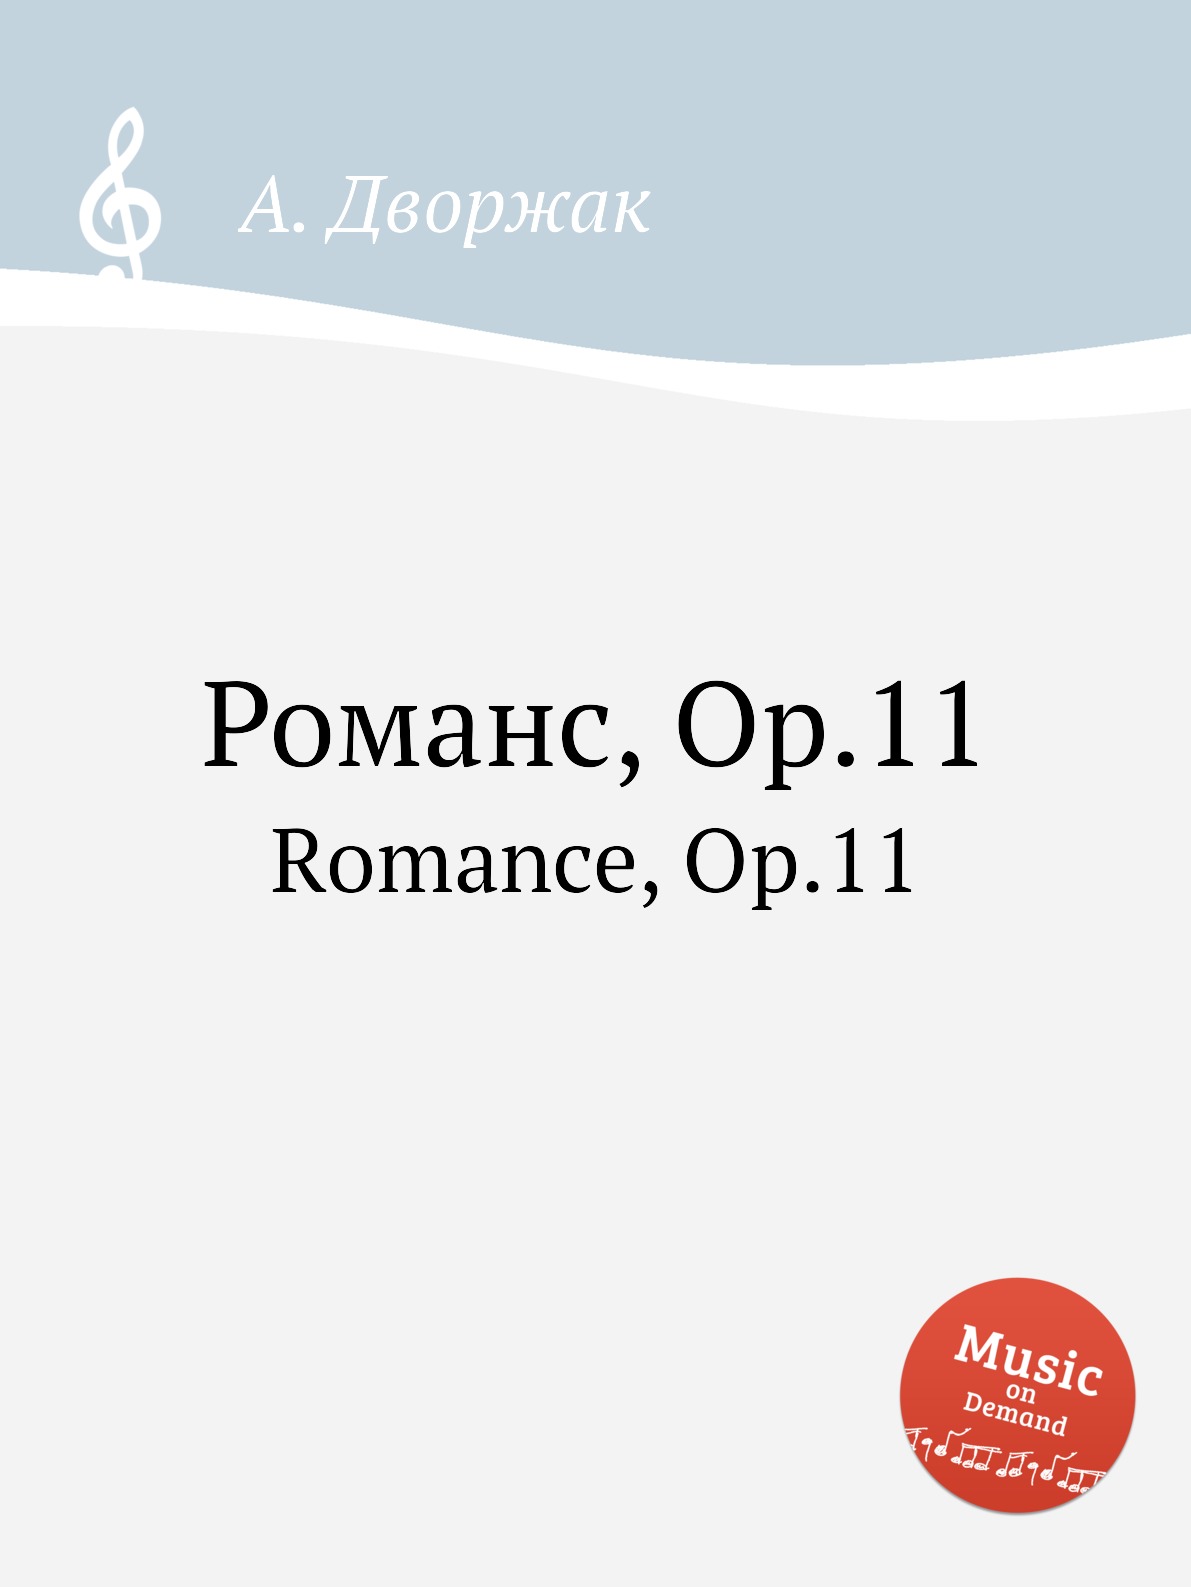 А. Дворжак "романс, op.11".